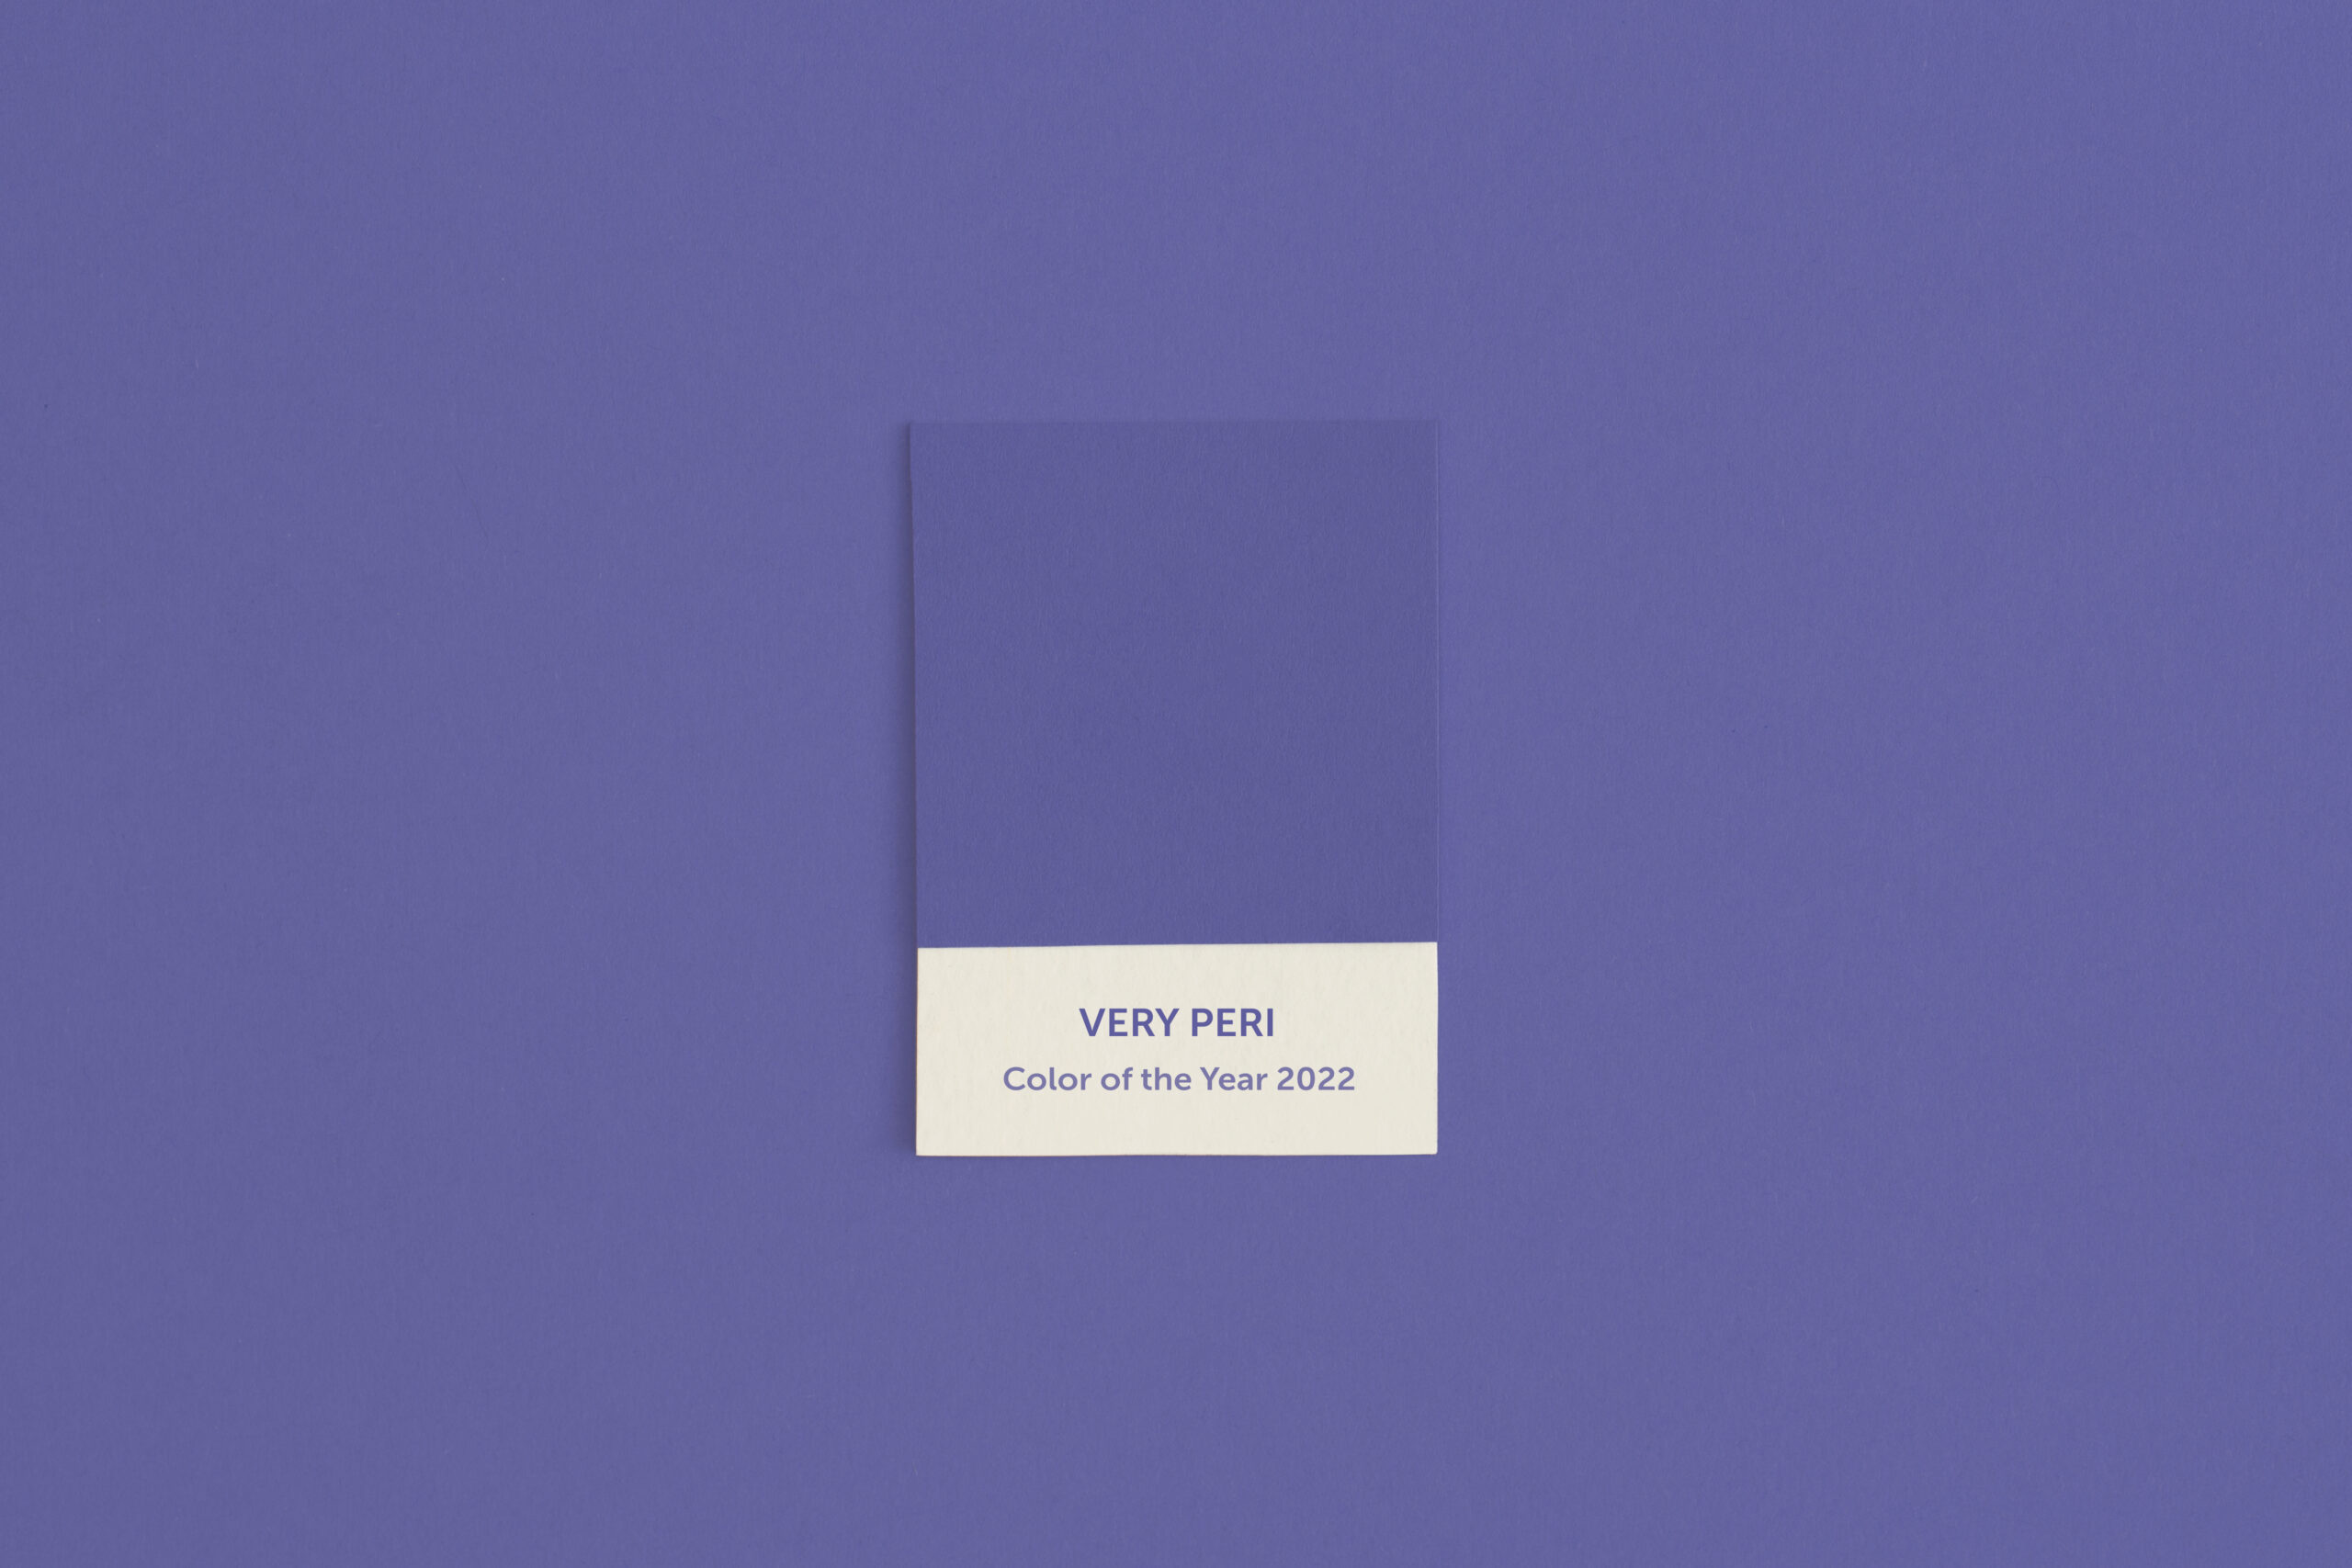 colore-2022-very-peri-viola-blu-colori-comunicazione-loghi-brand